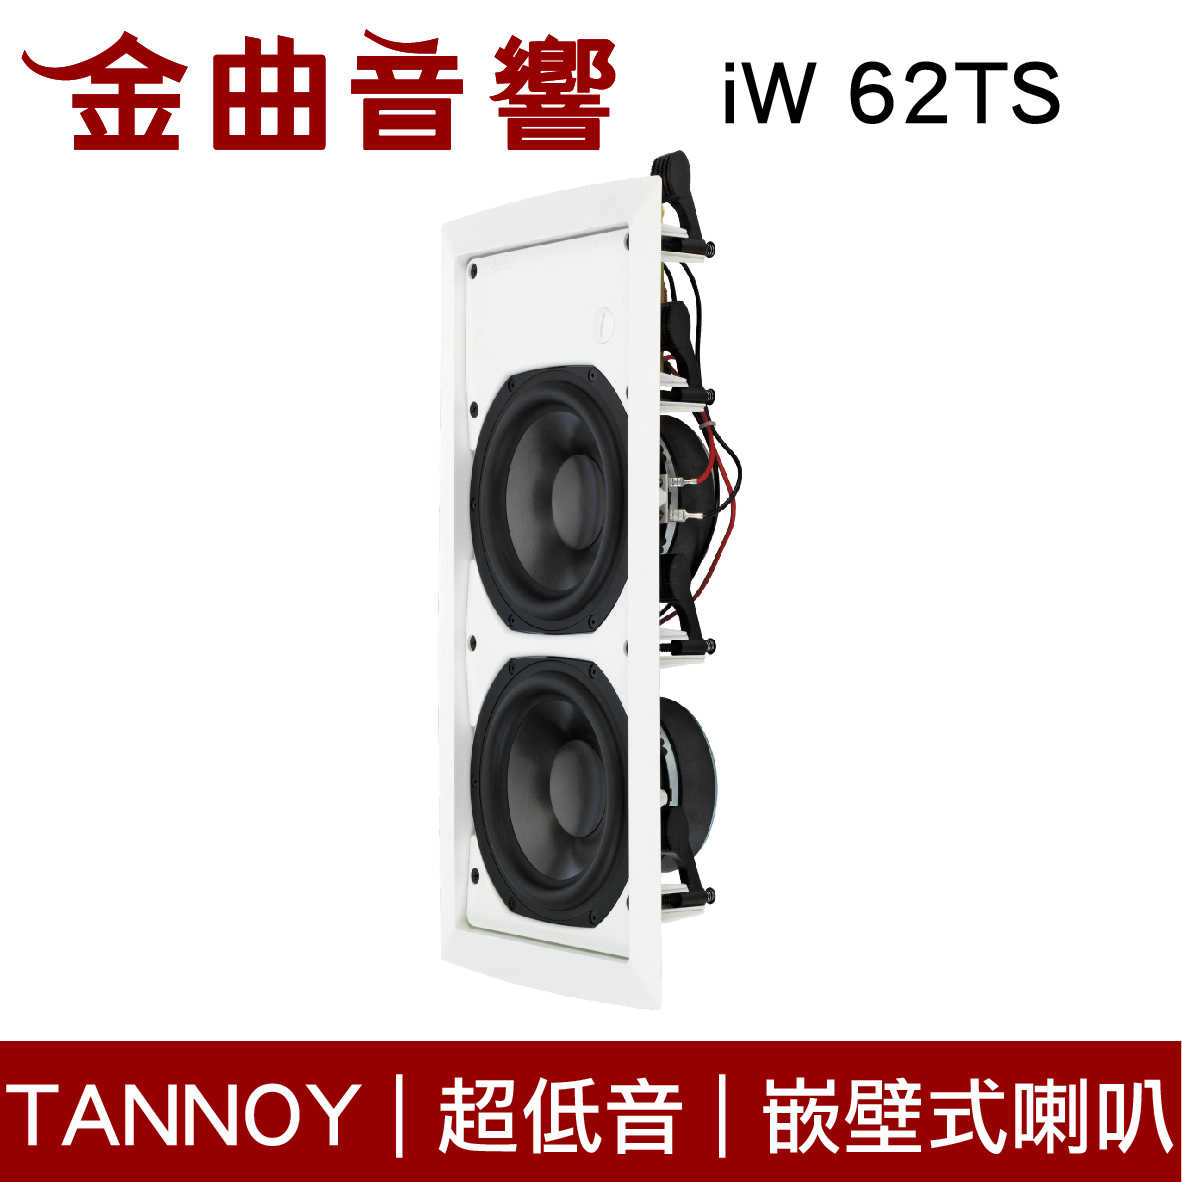 英國 TANNOY iW 62TS 超低音 嵌壁 嵌入式 喇叭 吸頂音響 | 金曲音響